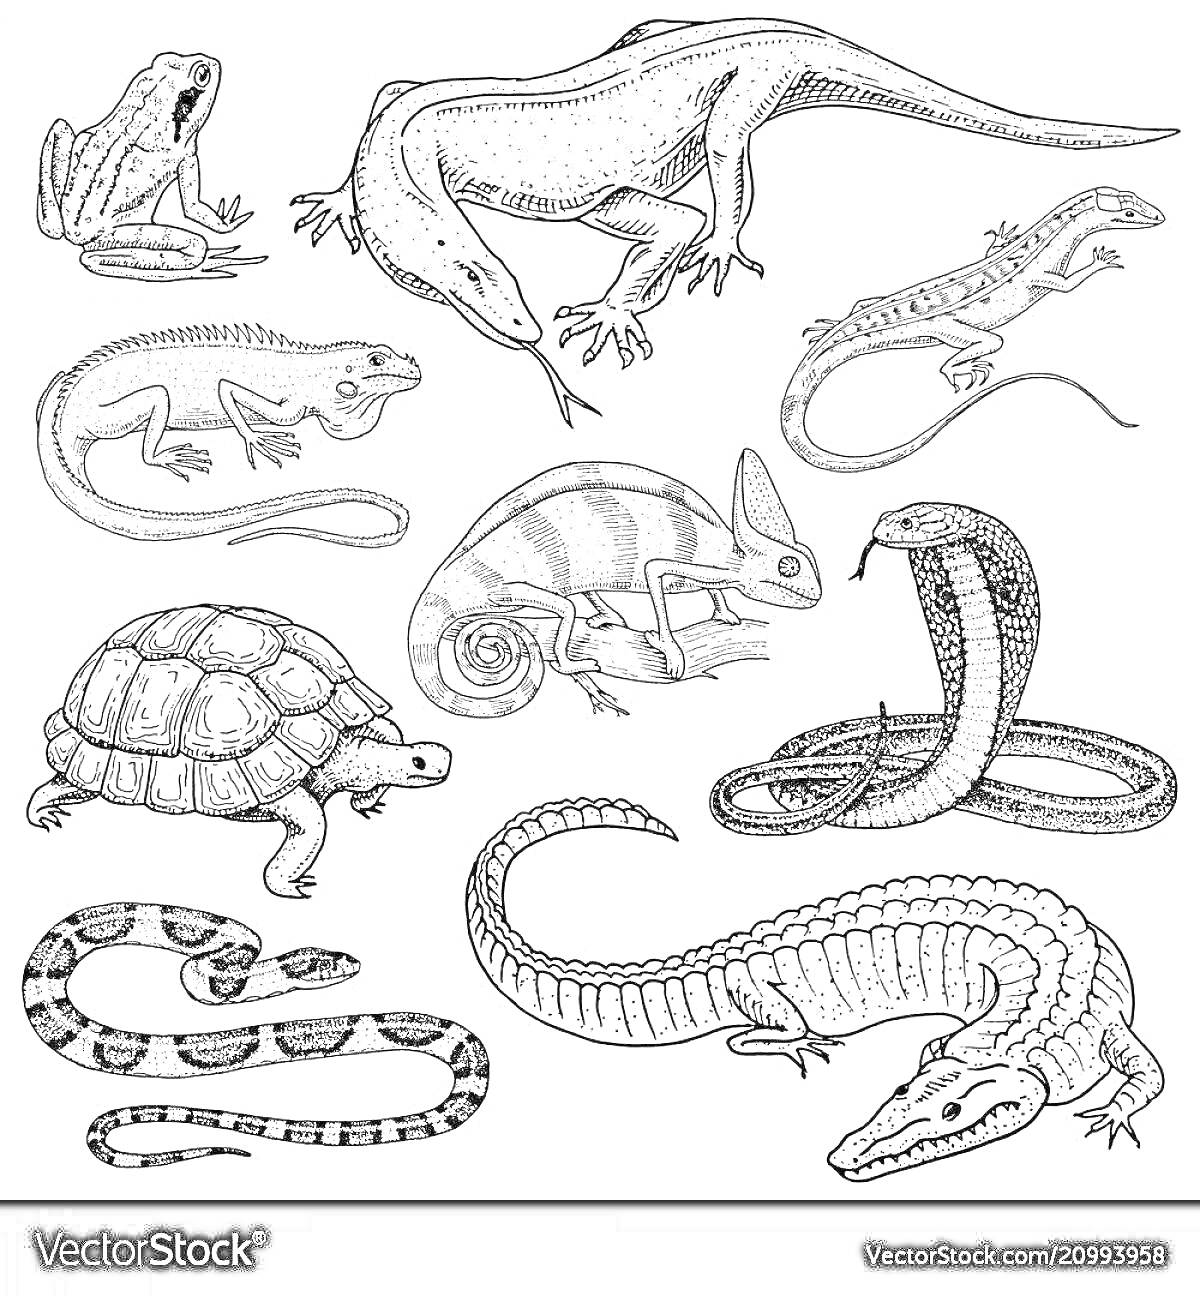 Раскраска Красящая страница с пресмыкающимися - жабы, ящерицы, черепаха, хамелеон, кобра, змеи и крокодил